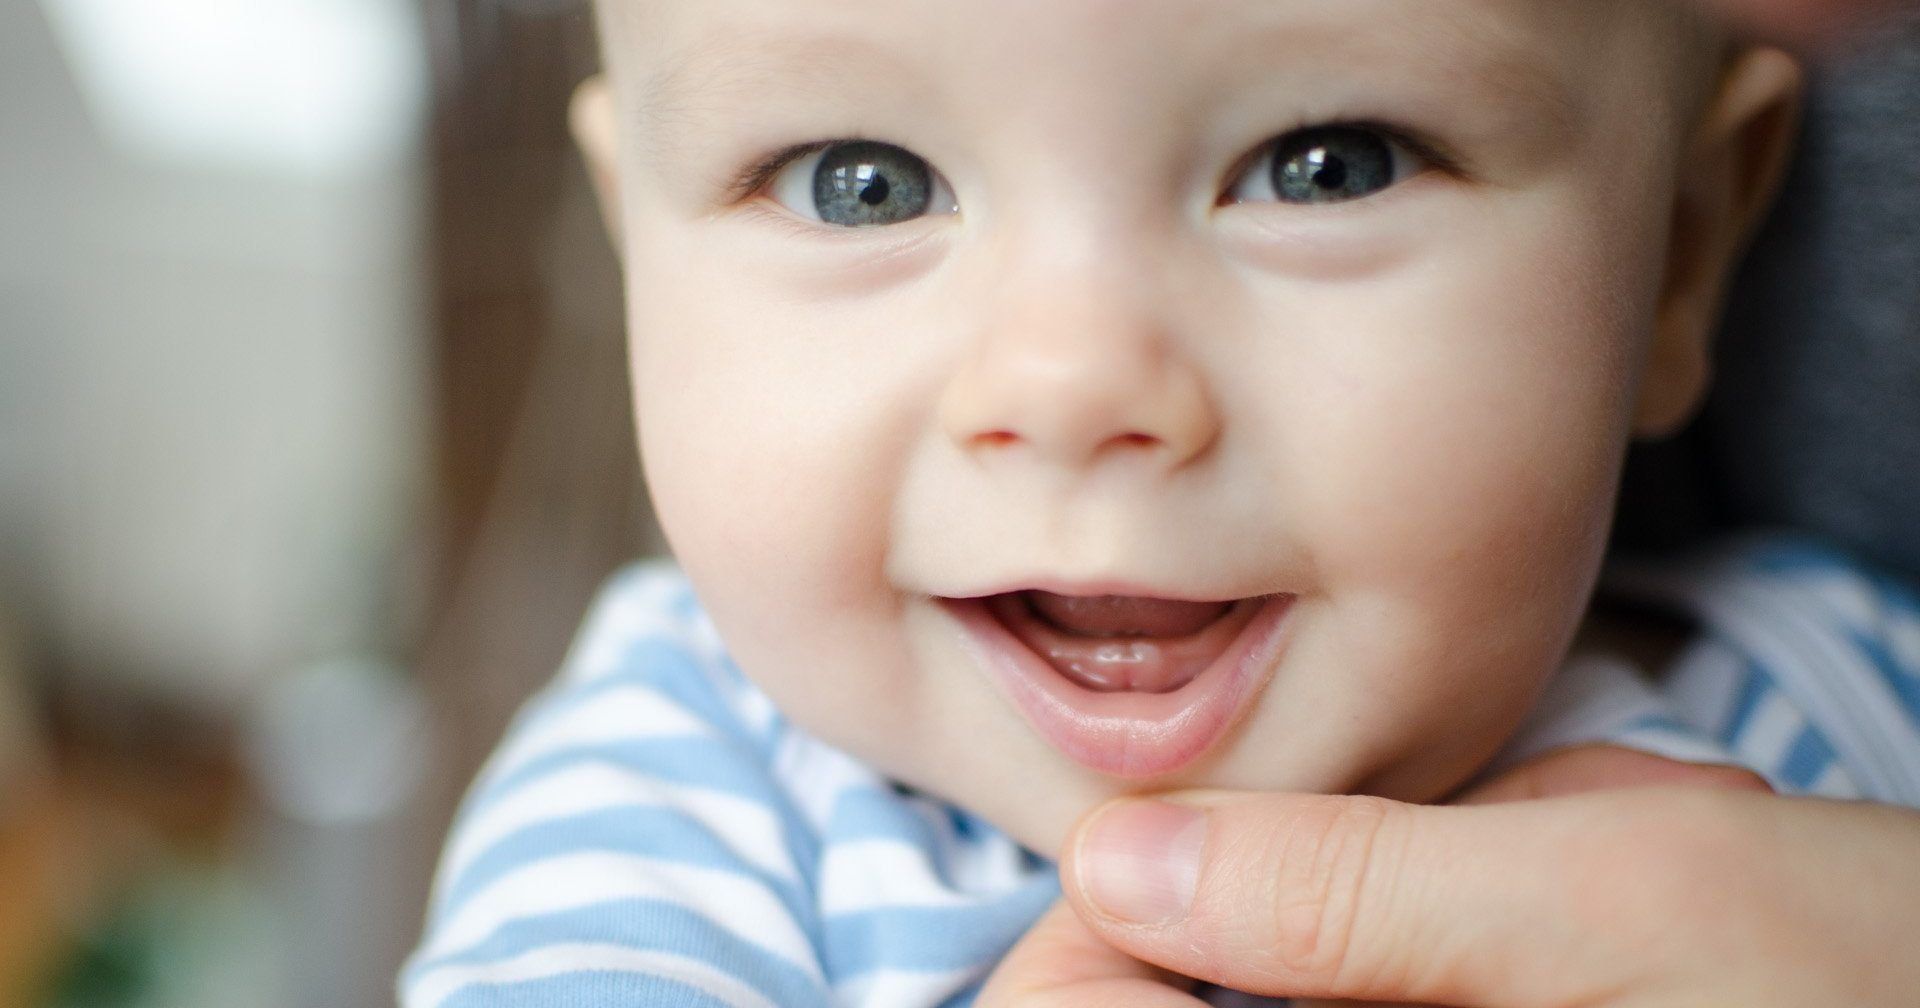 Labākās bērnu zobu ārstēšanas metodes 2020. gadā